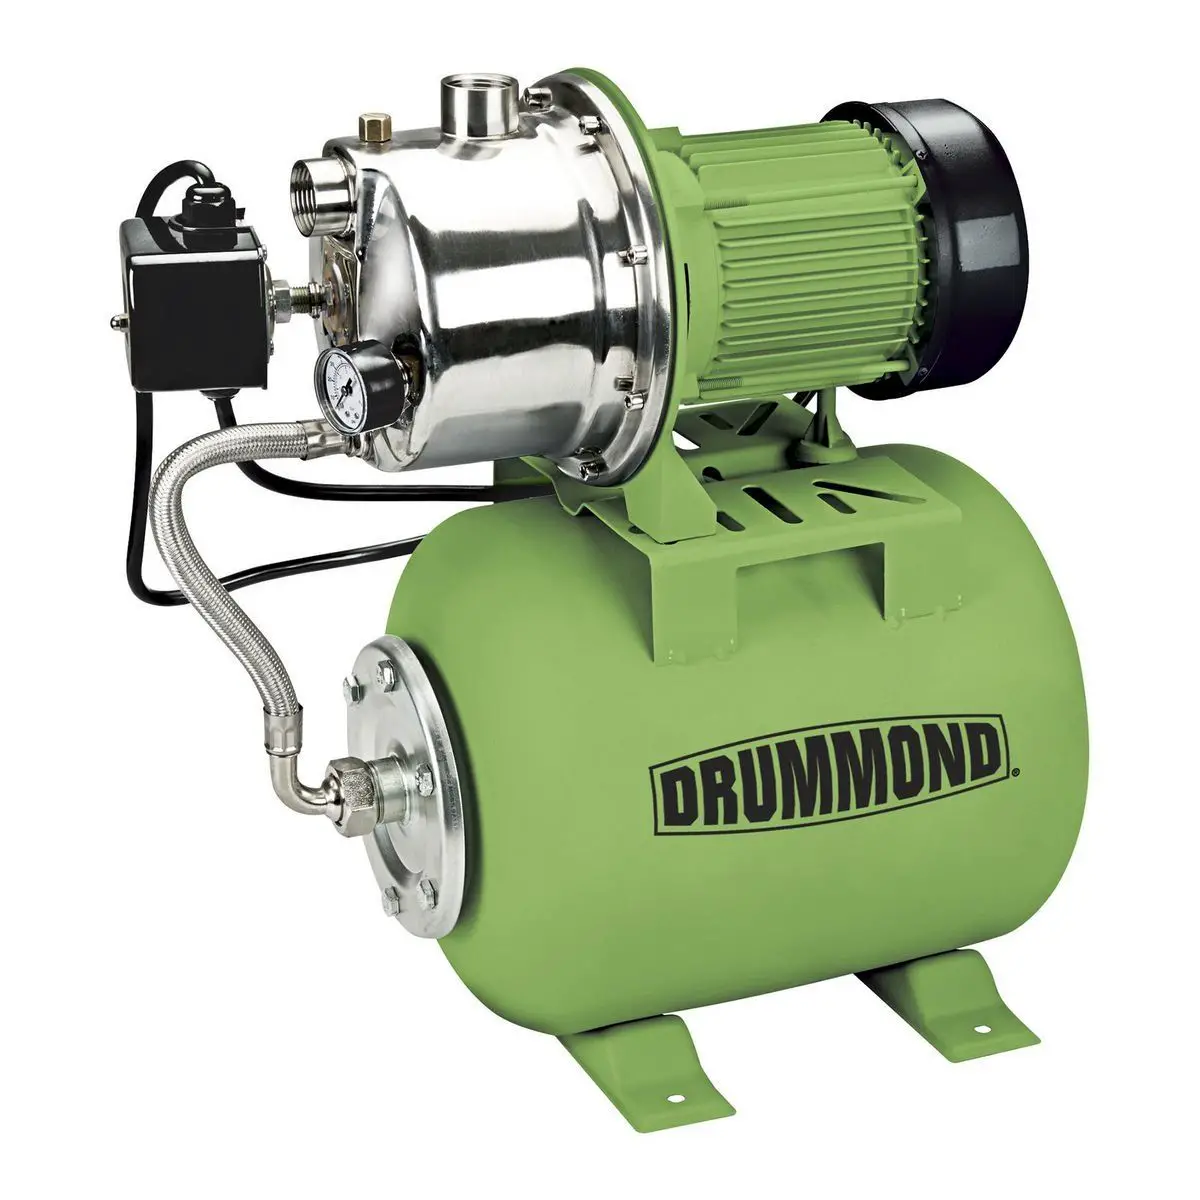 DRUMMOND-63407-1-HP-Bomba de pozo poco profundo y depósito de acero inoxidable-PRODUCTO